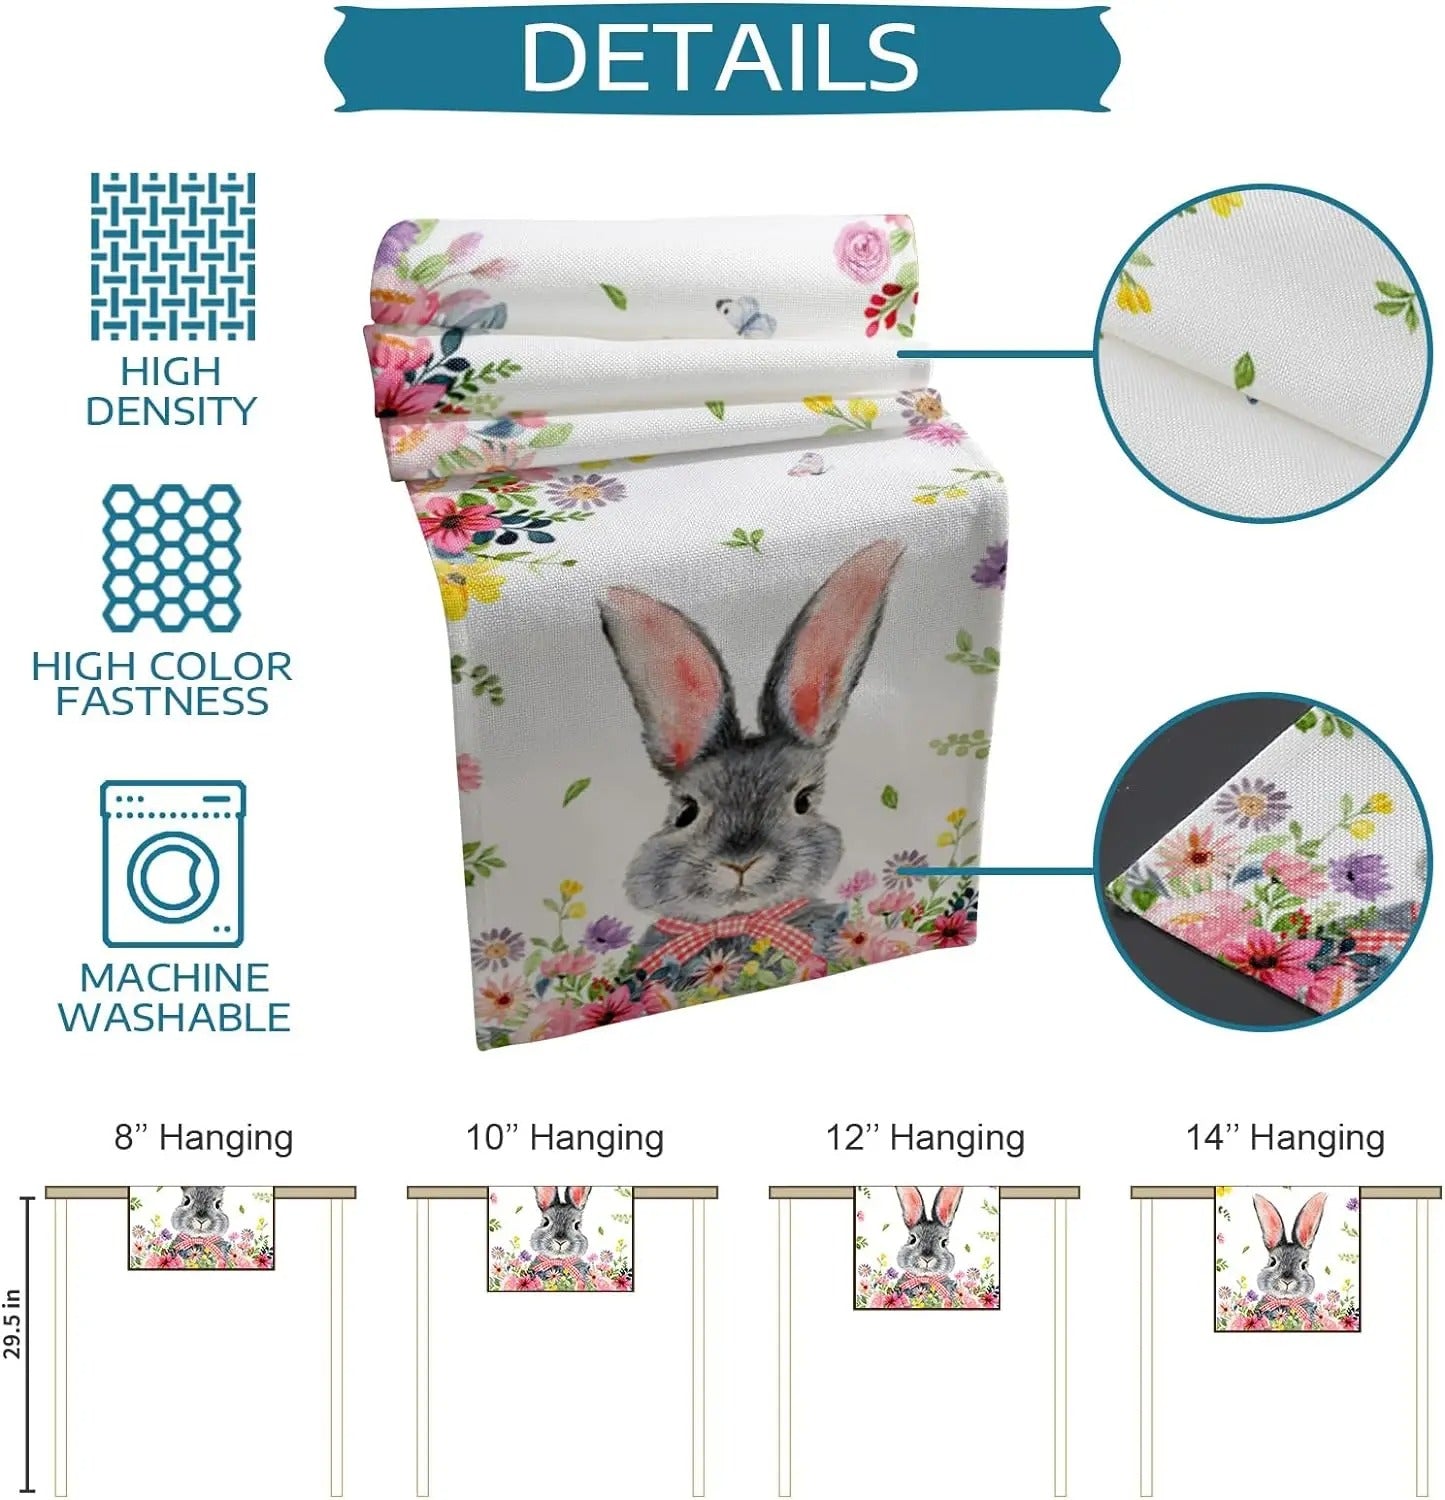 Easter Bunny Flower Linen Table Runners Dresser Scarves Table Decor